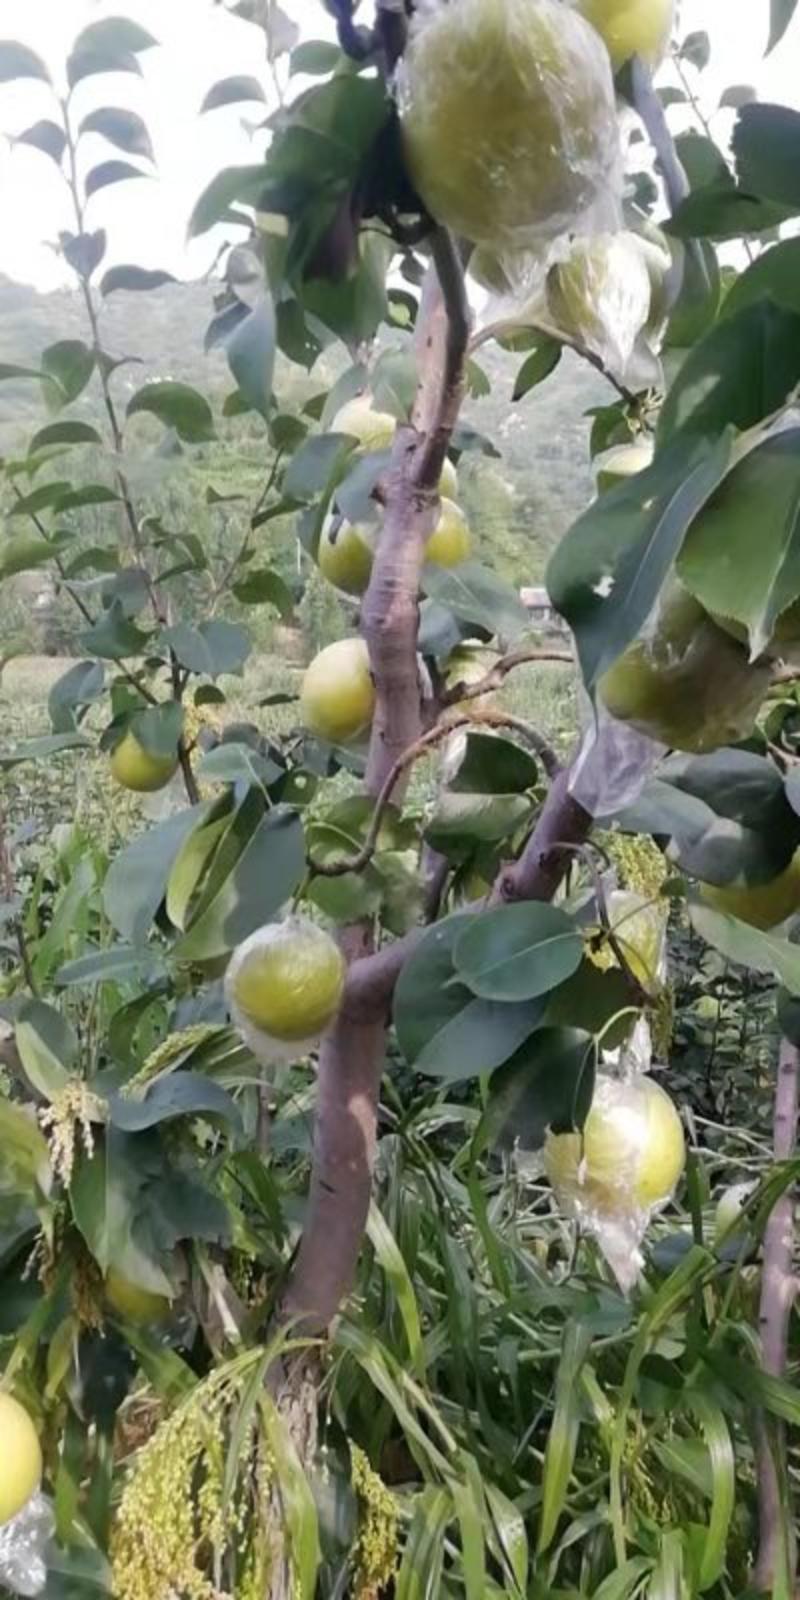 青龙县皇冠梨以大量下树有抓紧时间购买的联系。